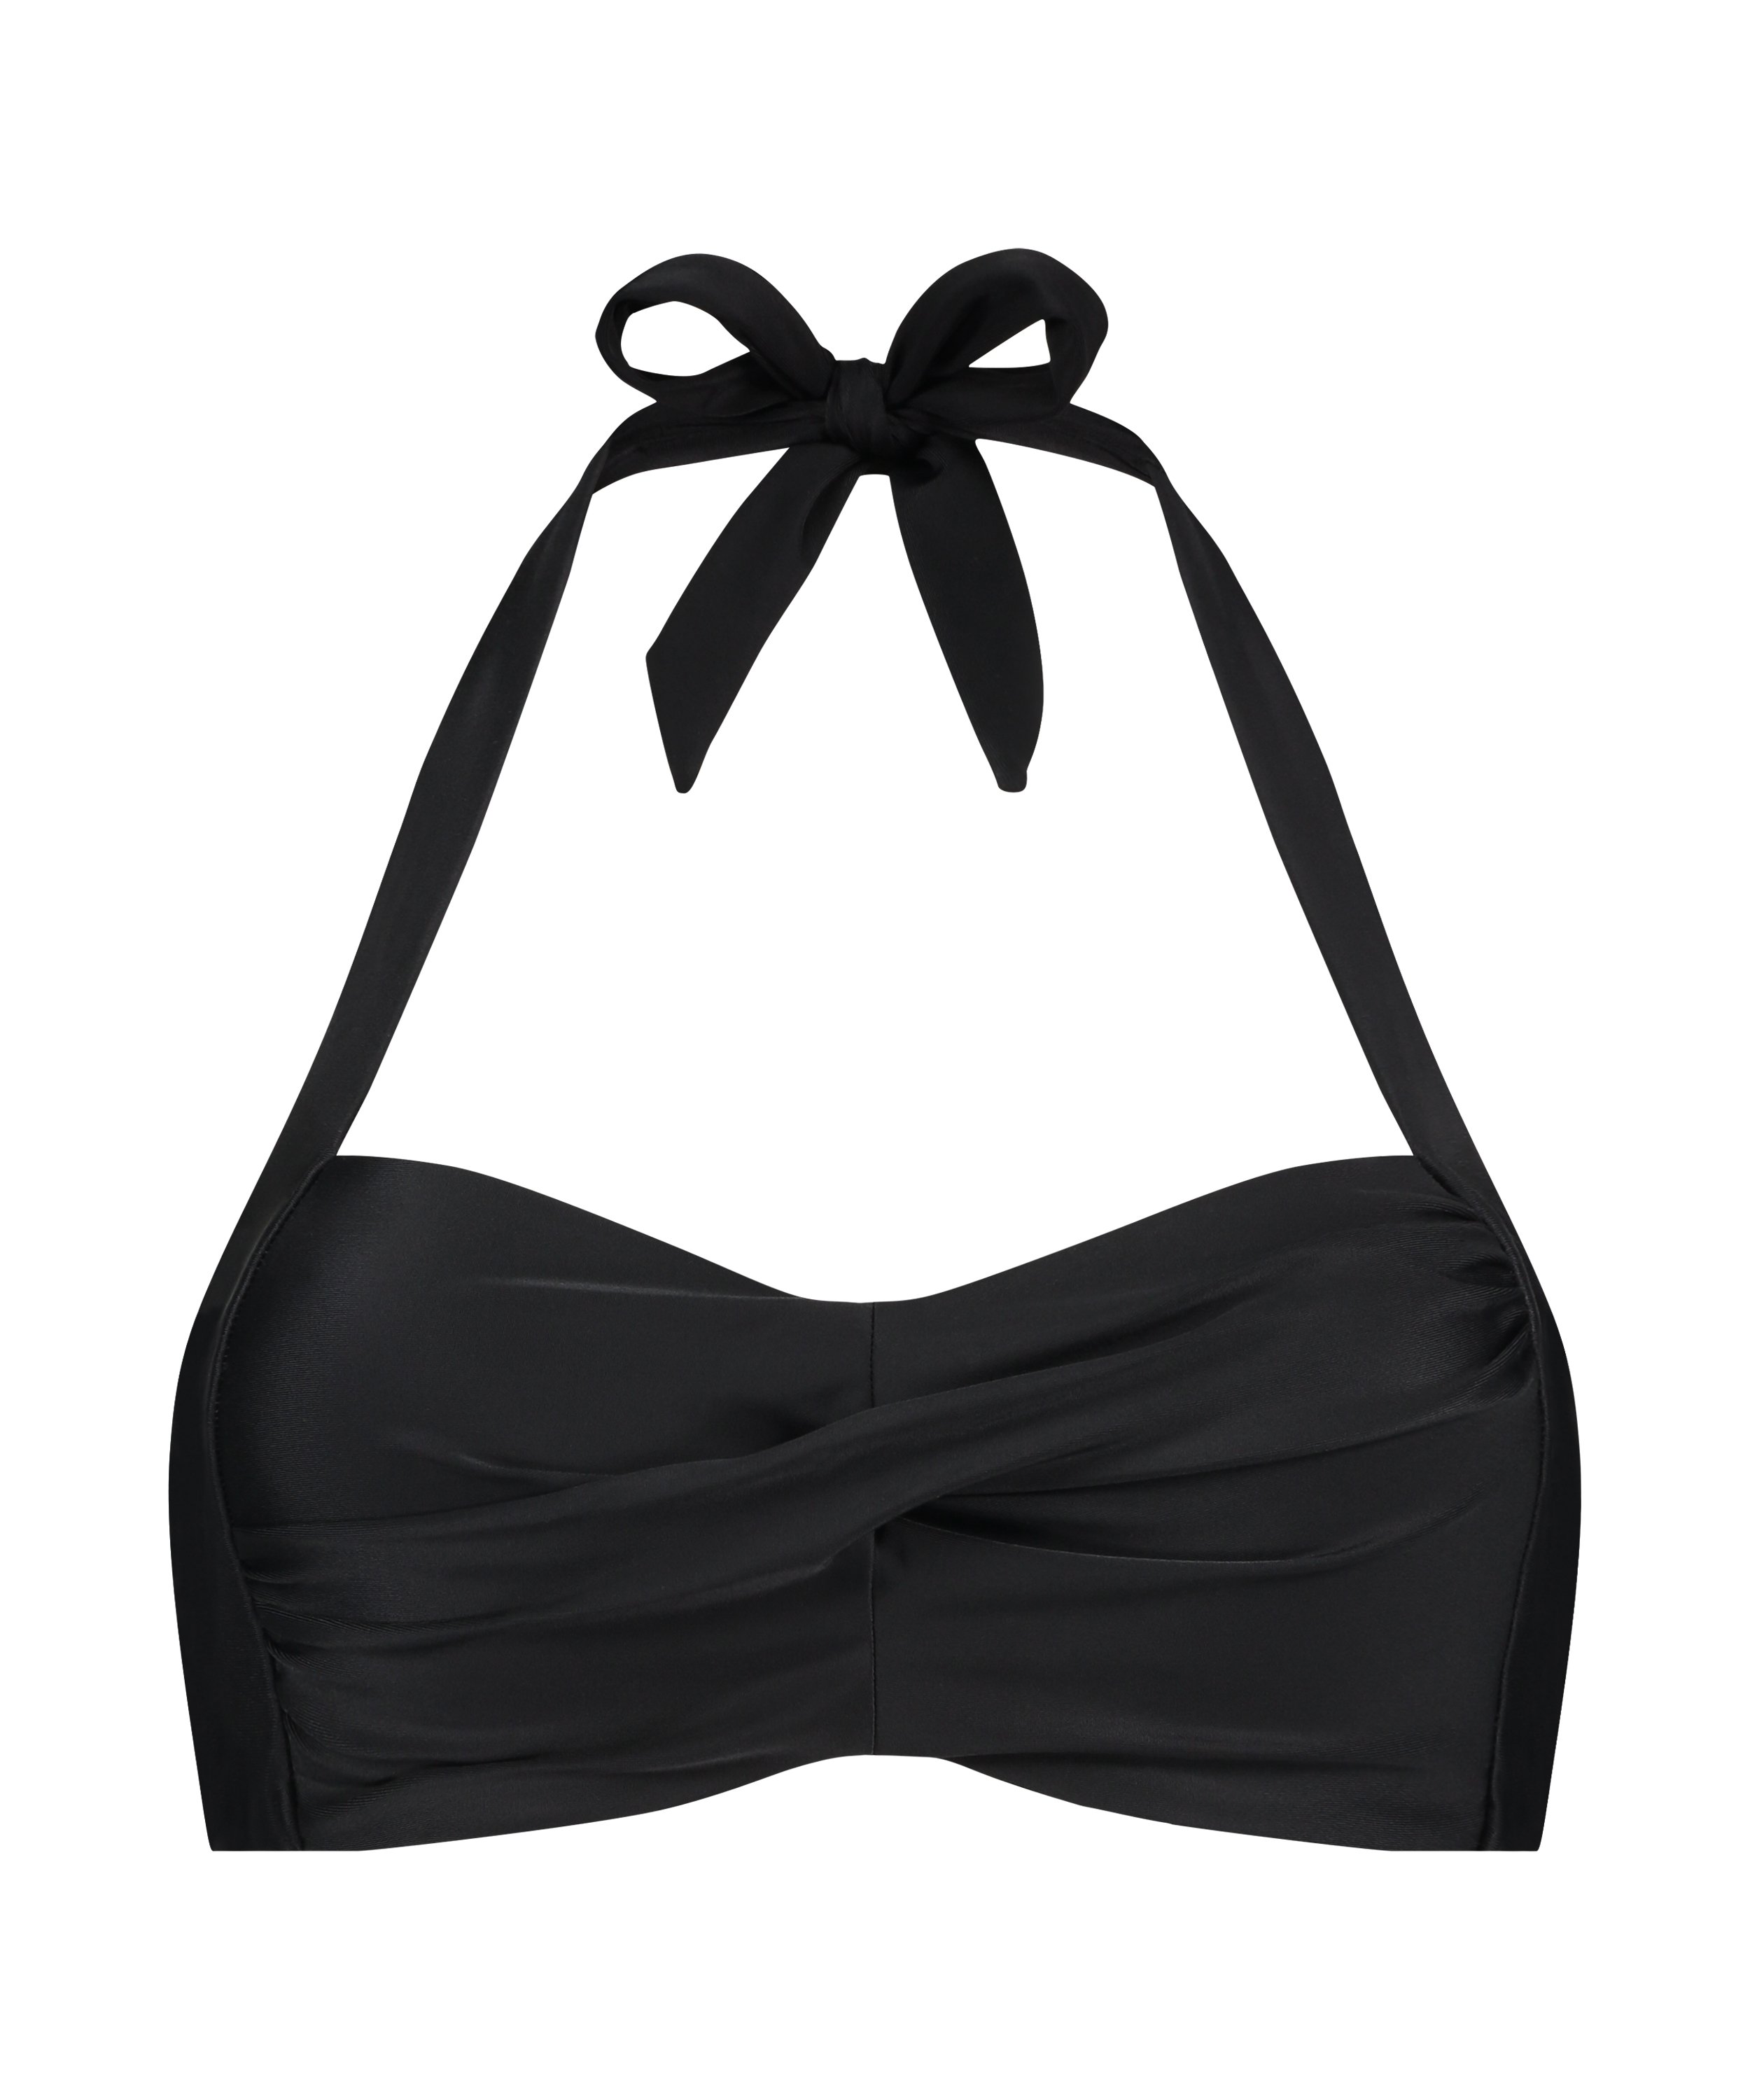 Luxe Bandeau Bikini Top, Black, main